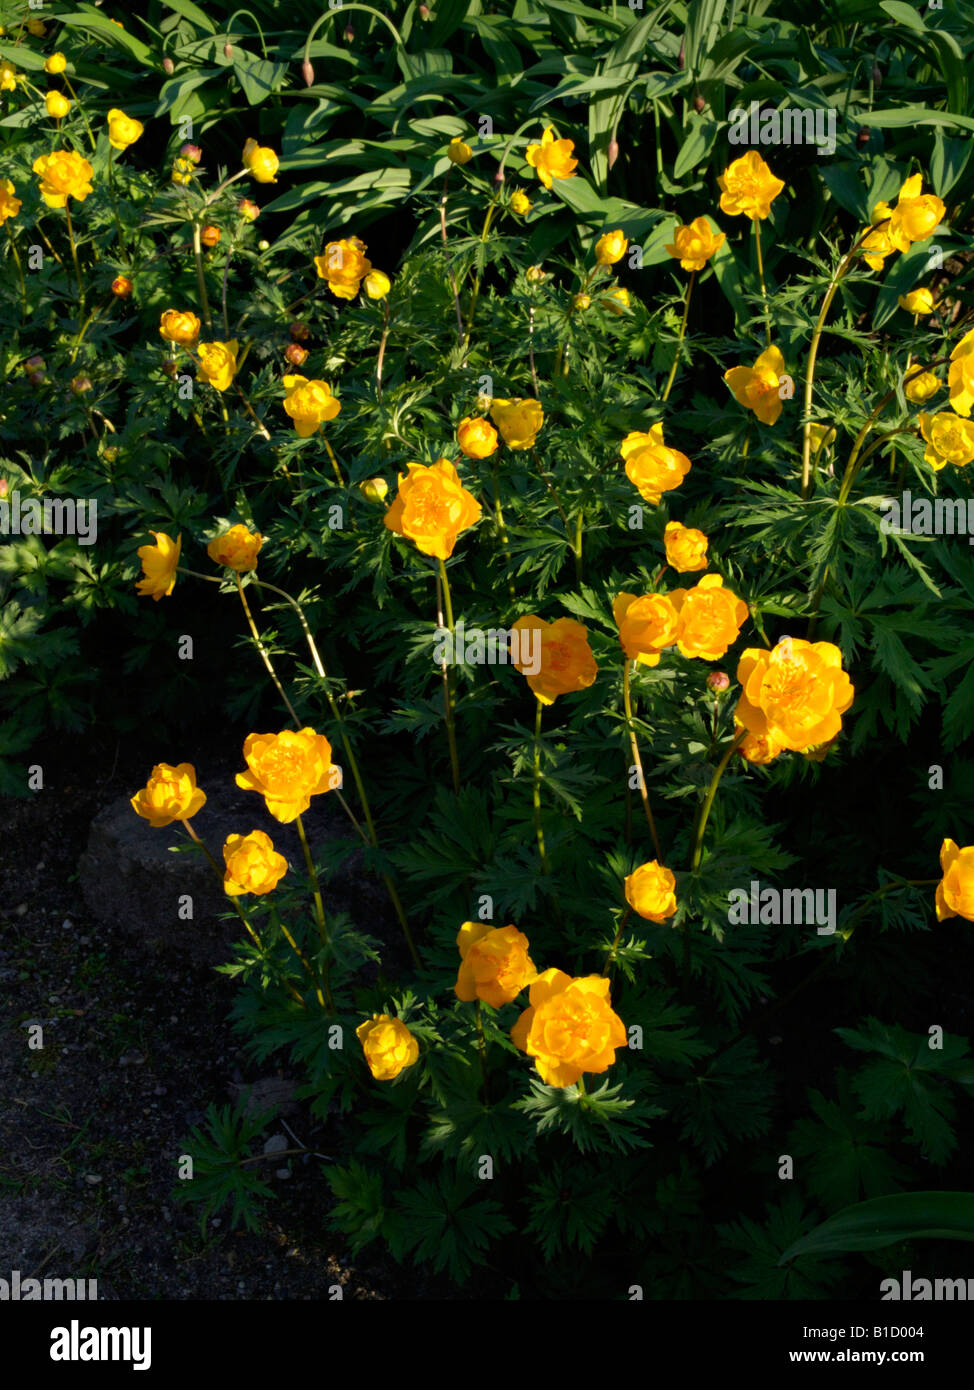 Chinese globeflower (Trollius chinensis) Stock Photo